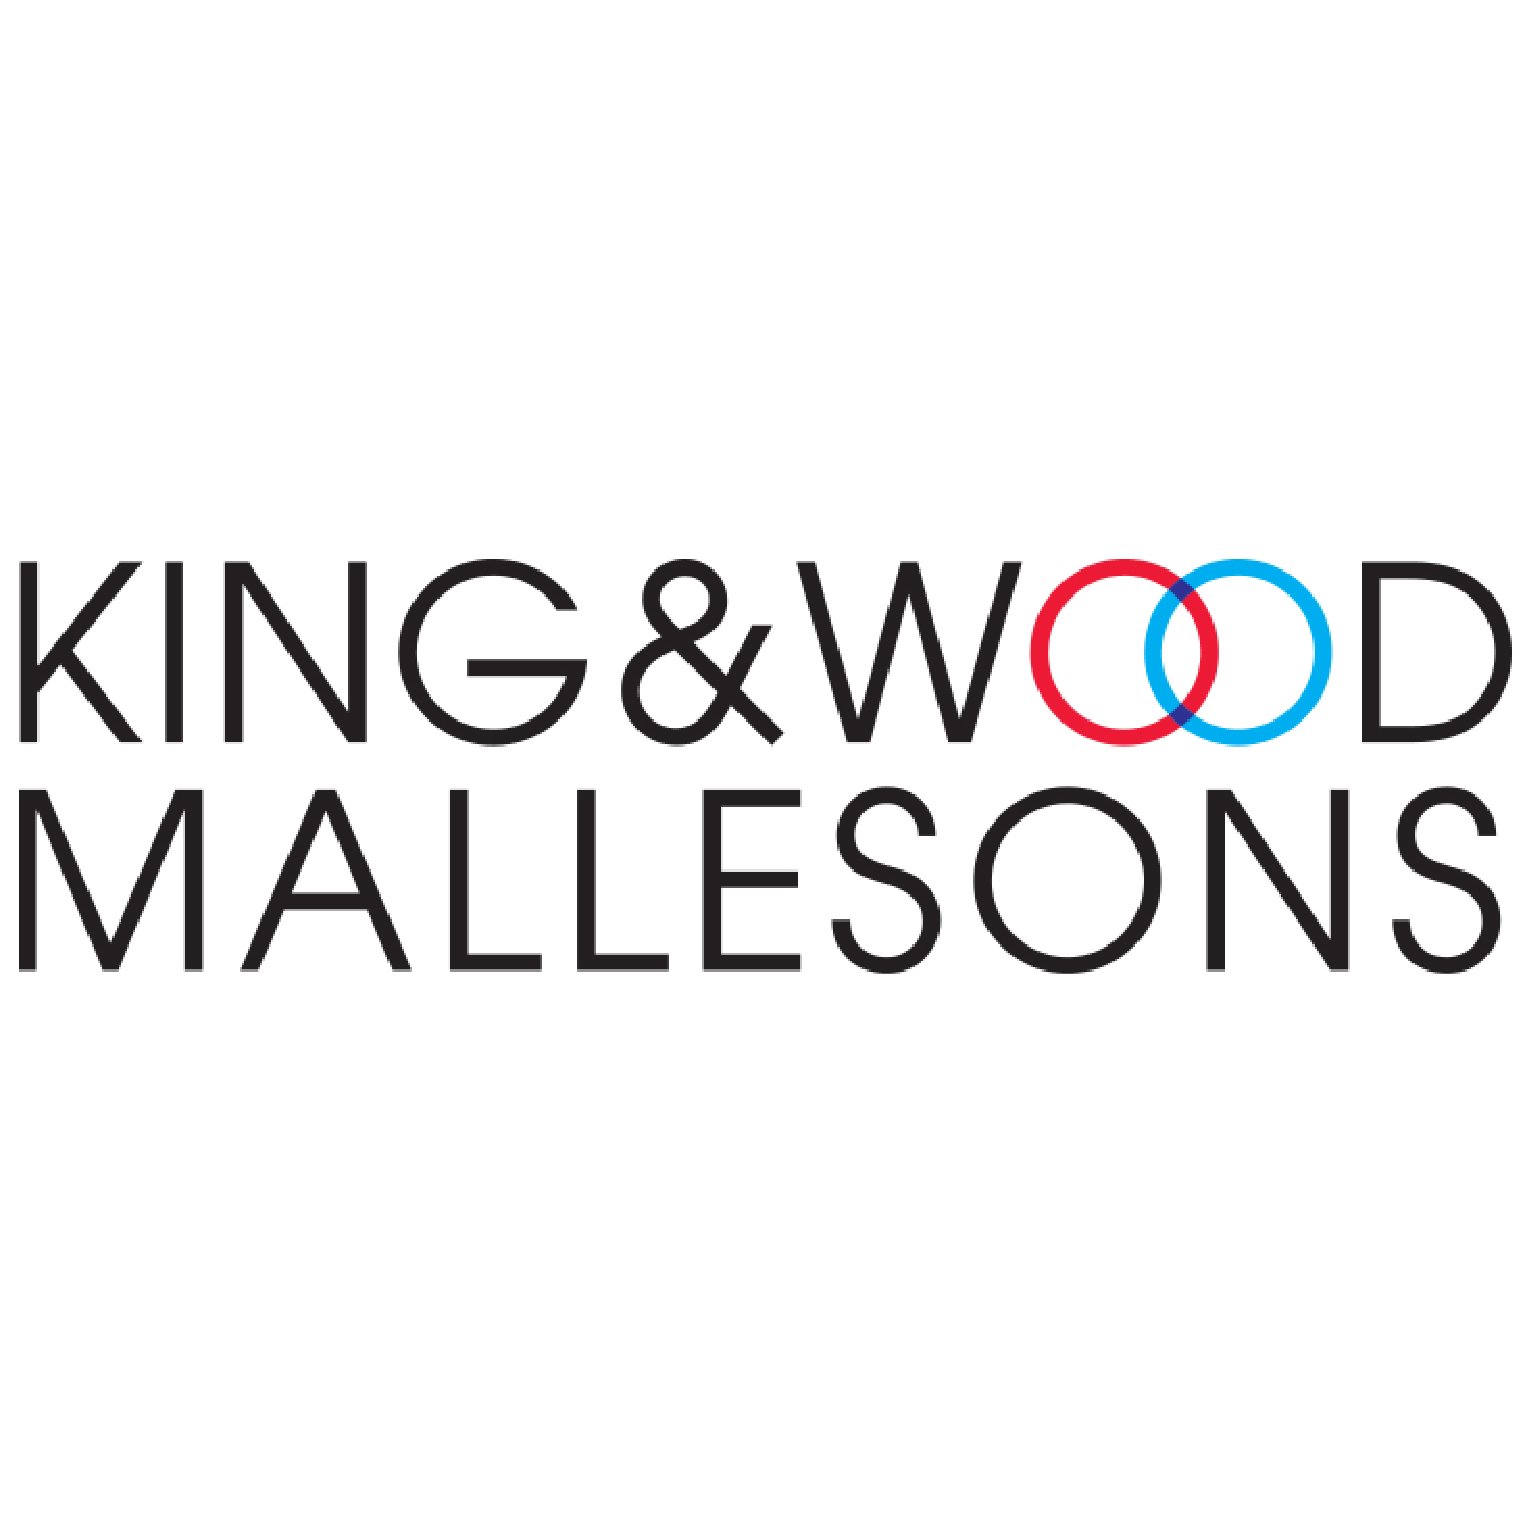 king & wood mallesons.jpg